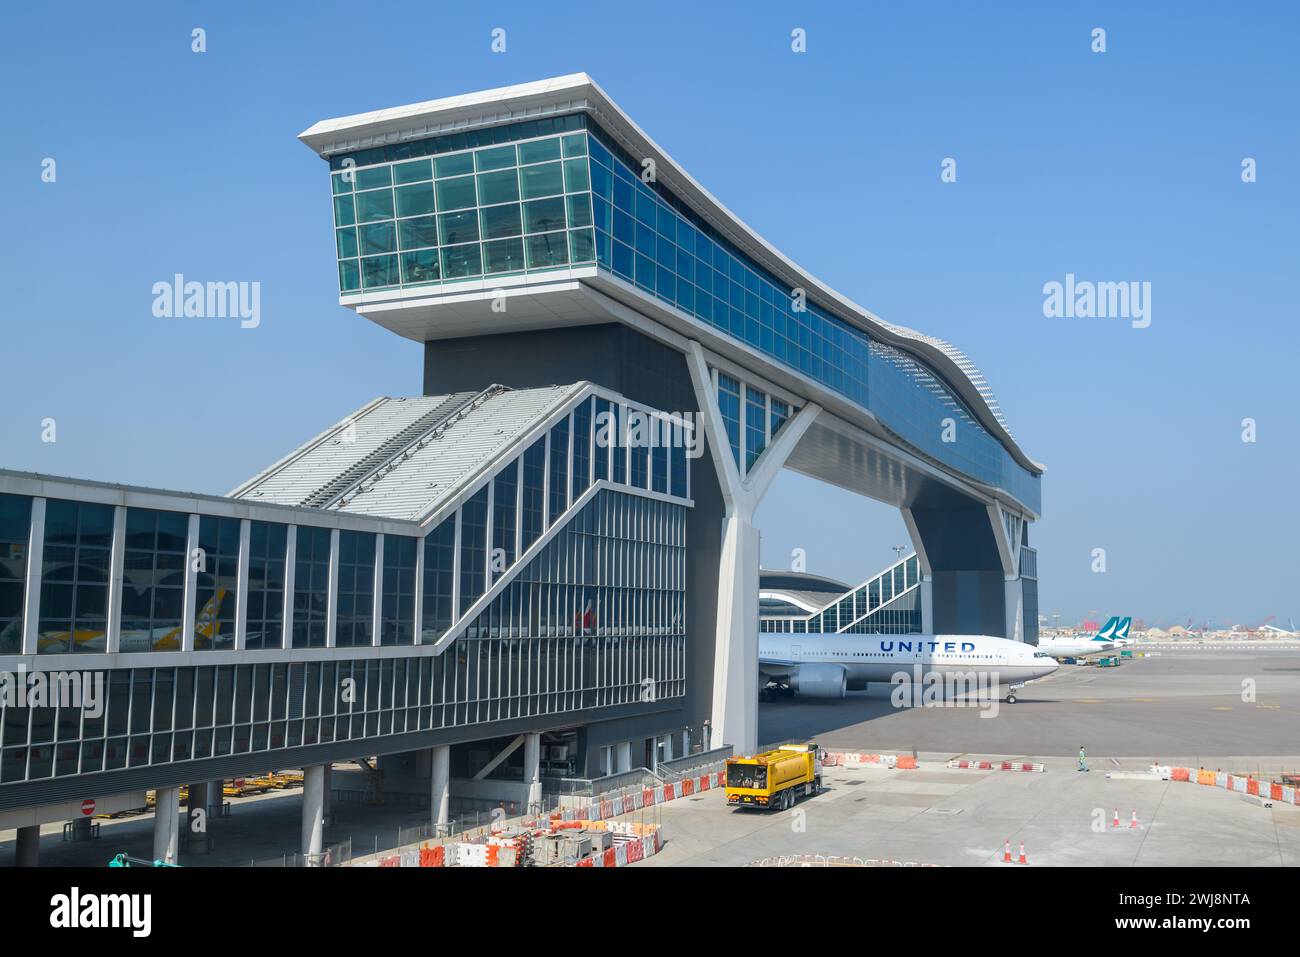 Aereo che passa sotto la piattaforma Sky Deck dell'aeroporto Chek Lap Kok, un nuovo ponte che collega i terminal dell'aeroporto di Hong Kong. Aereo sotto HKG skydeck. Foto Stock